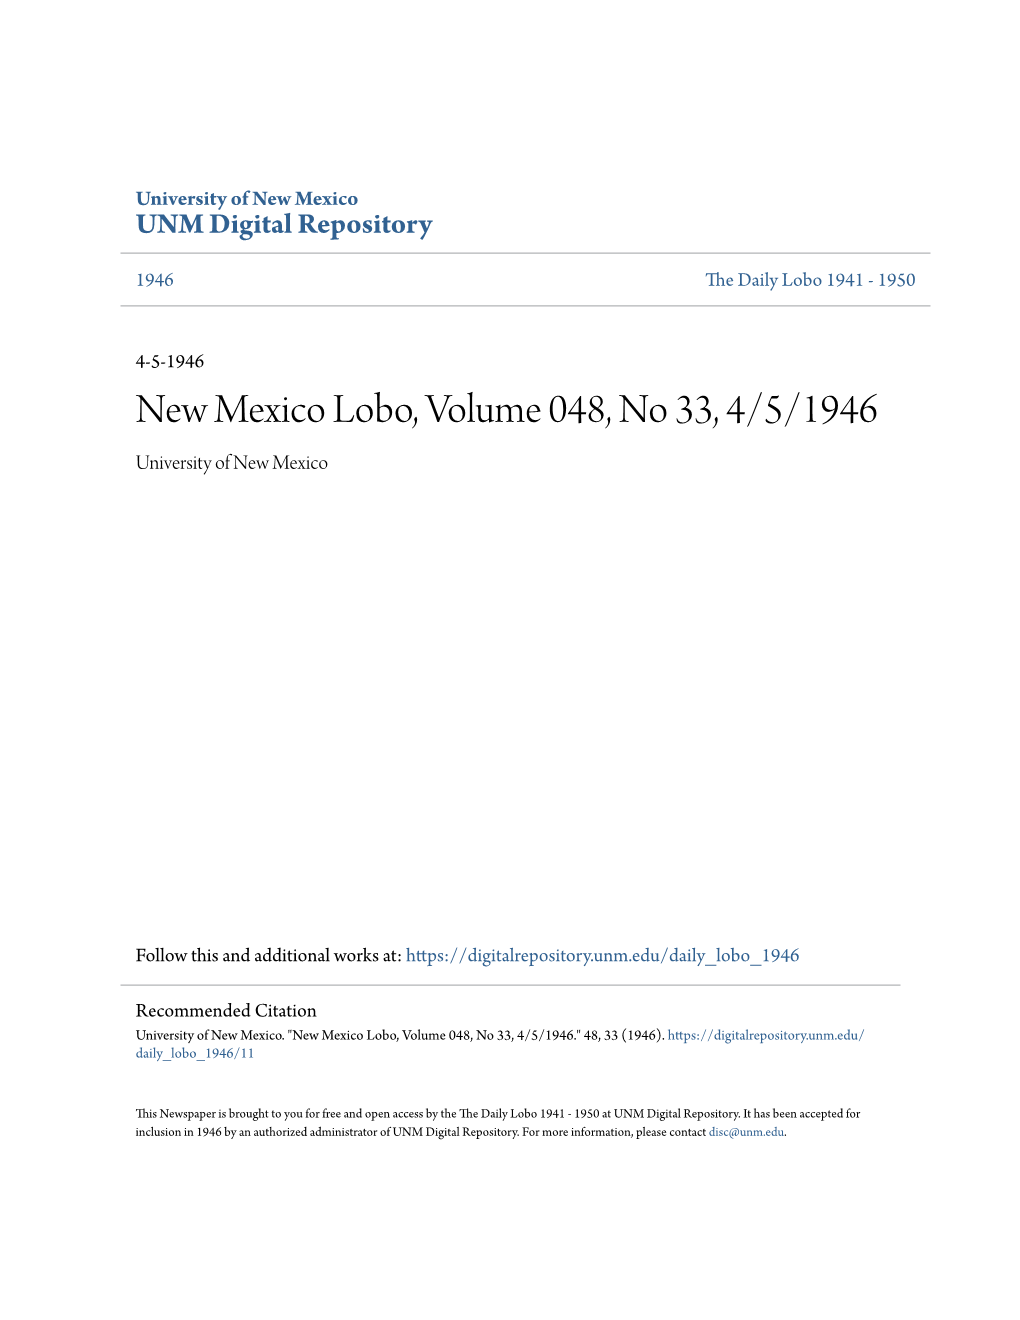 New Mexico Lobo, Volume 048, No 33, 4/5/1946 University of New Mexico